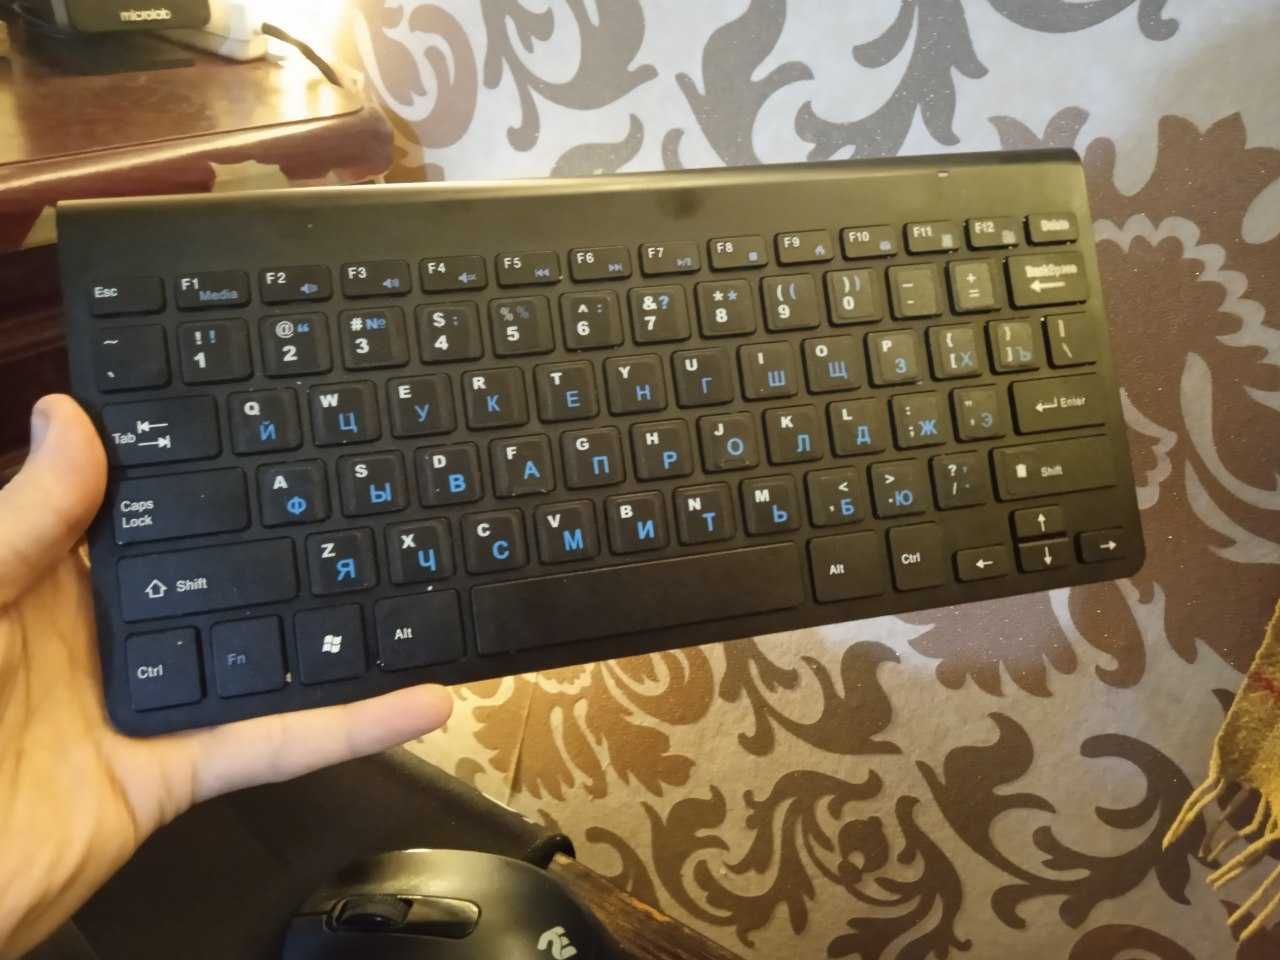 Купите ноутбук и бонус добавится клавиатура!